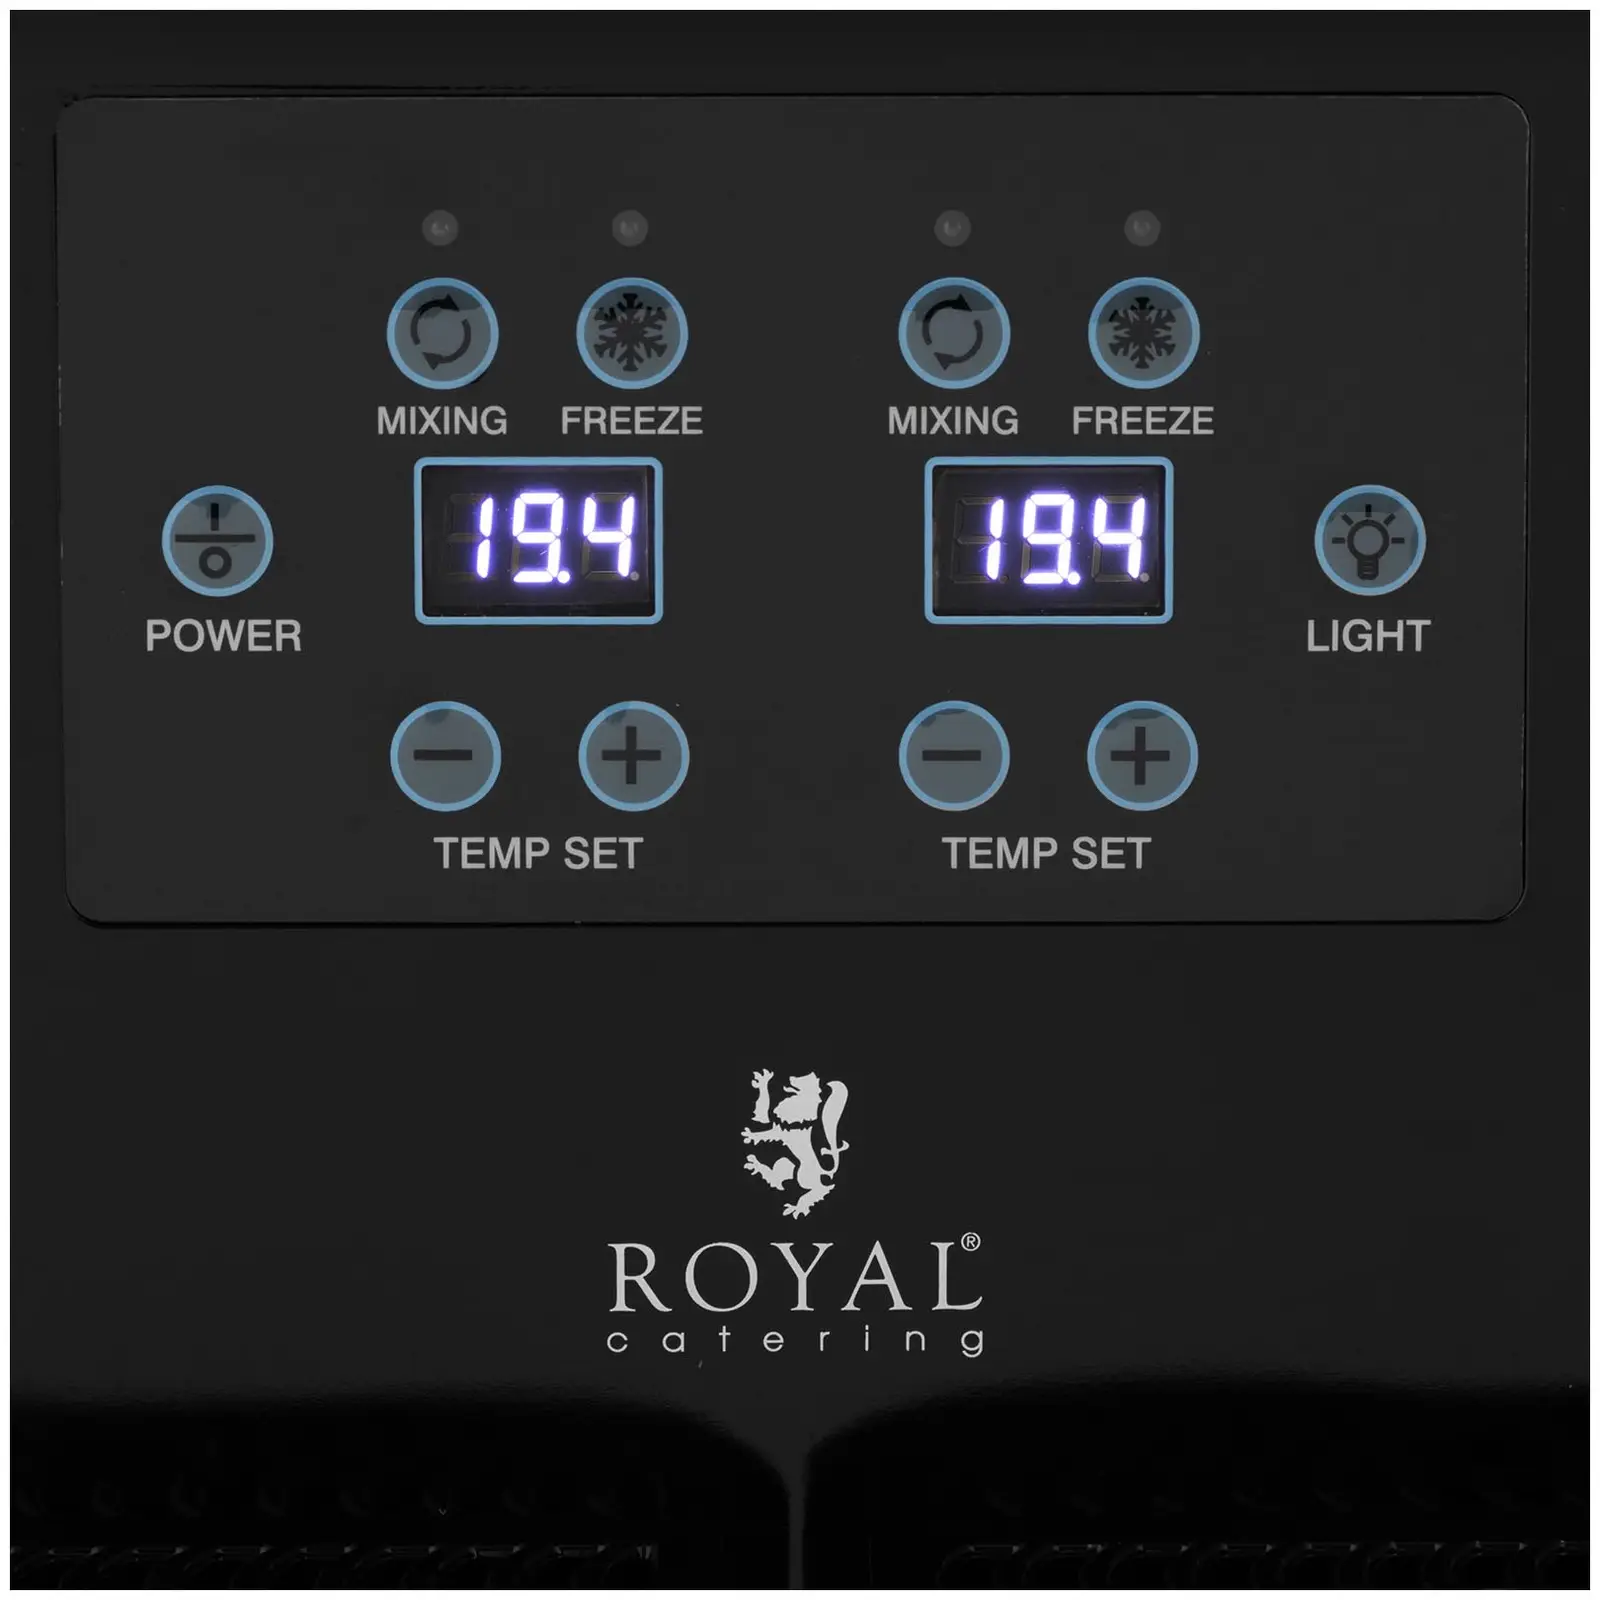 Γρανιτομηχανή - 2 x 2 l - ψηφιακός πίνακας ελέγχου - Royal Catering